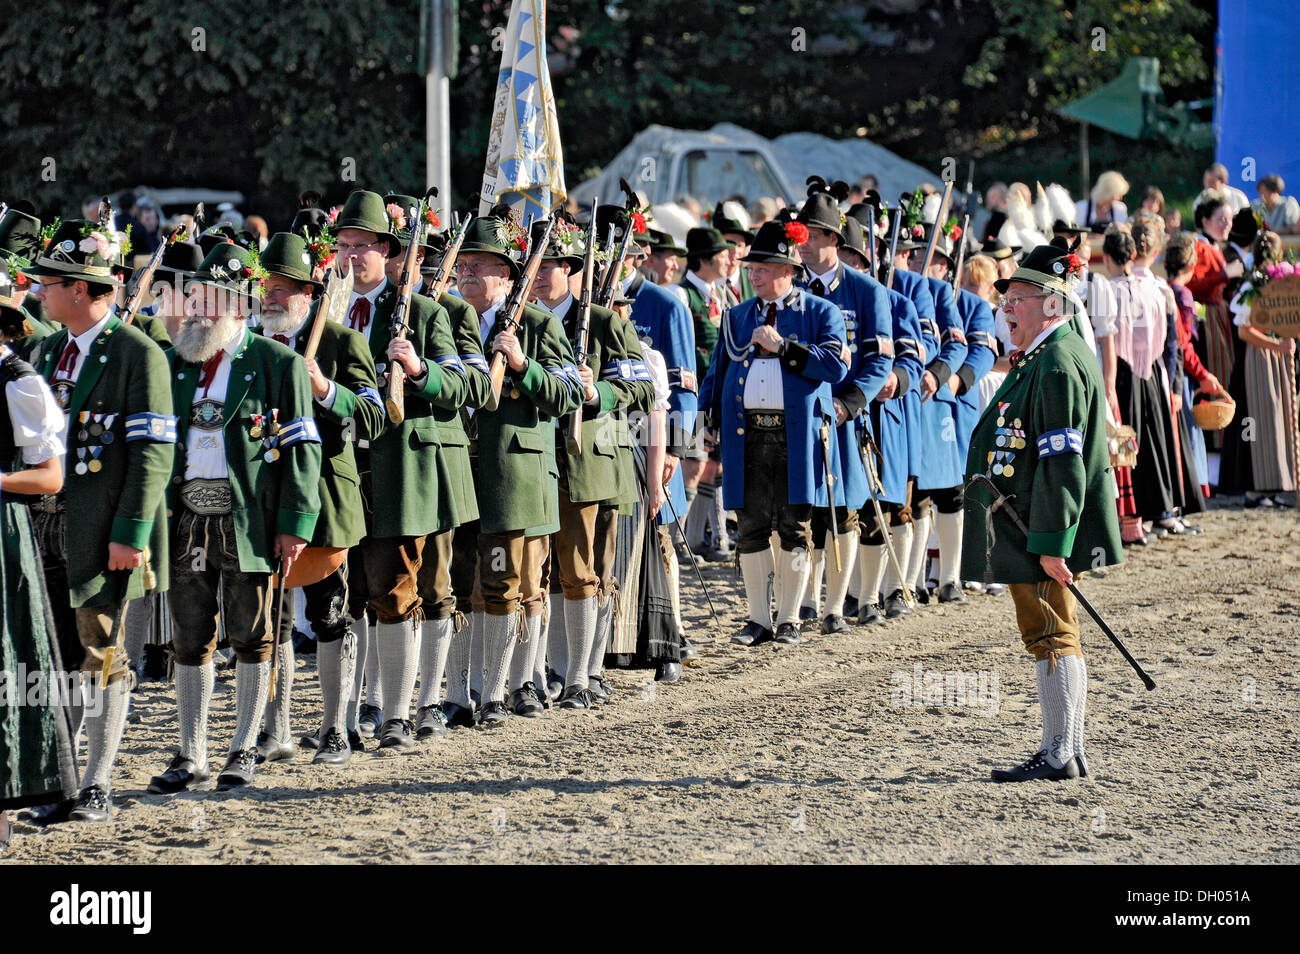 Desfile de los clubes de armas, miembros vistiendo trajes tradicionales bávaros, recinto ferial, festival Oktoberfest, Munich, Alta Baviera Foto de stock